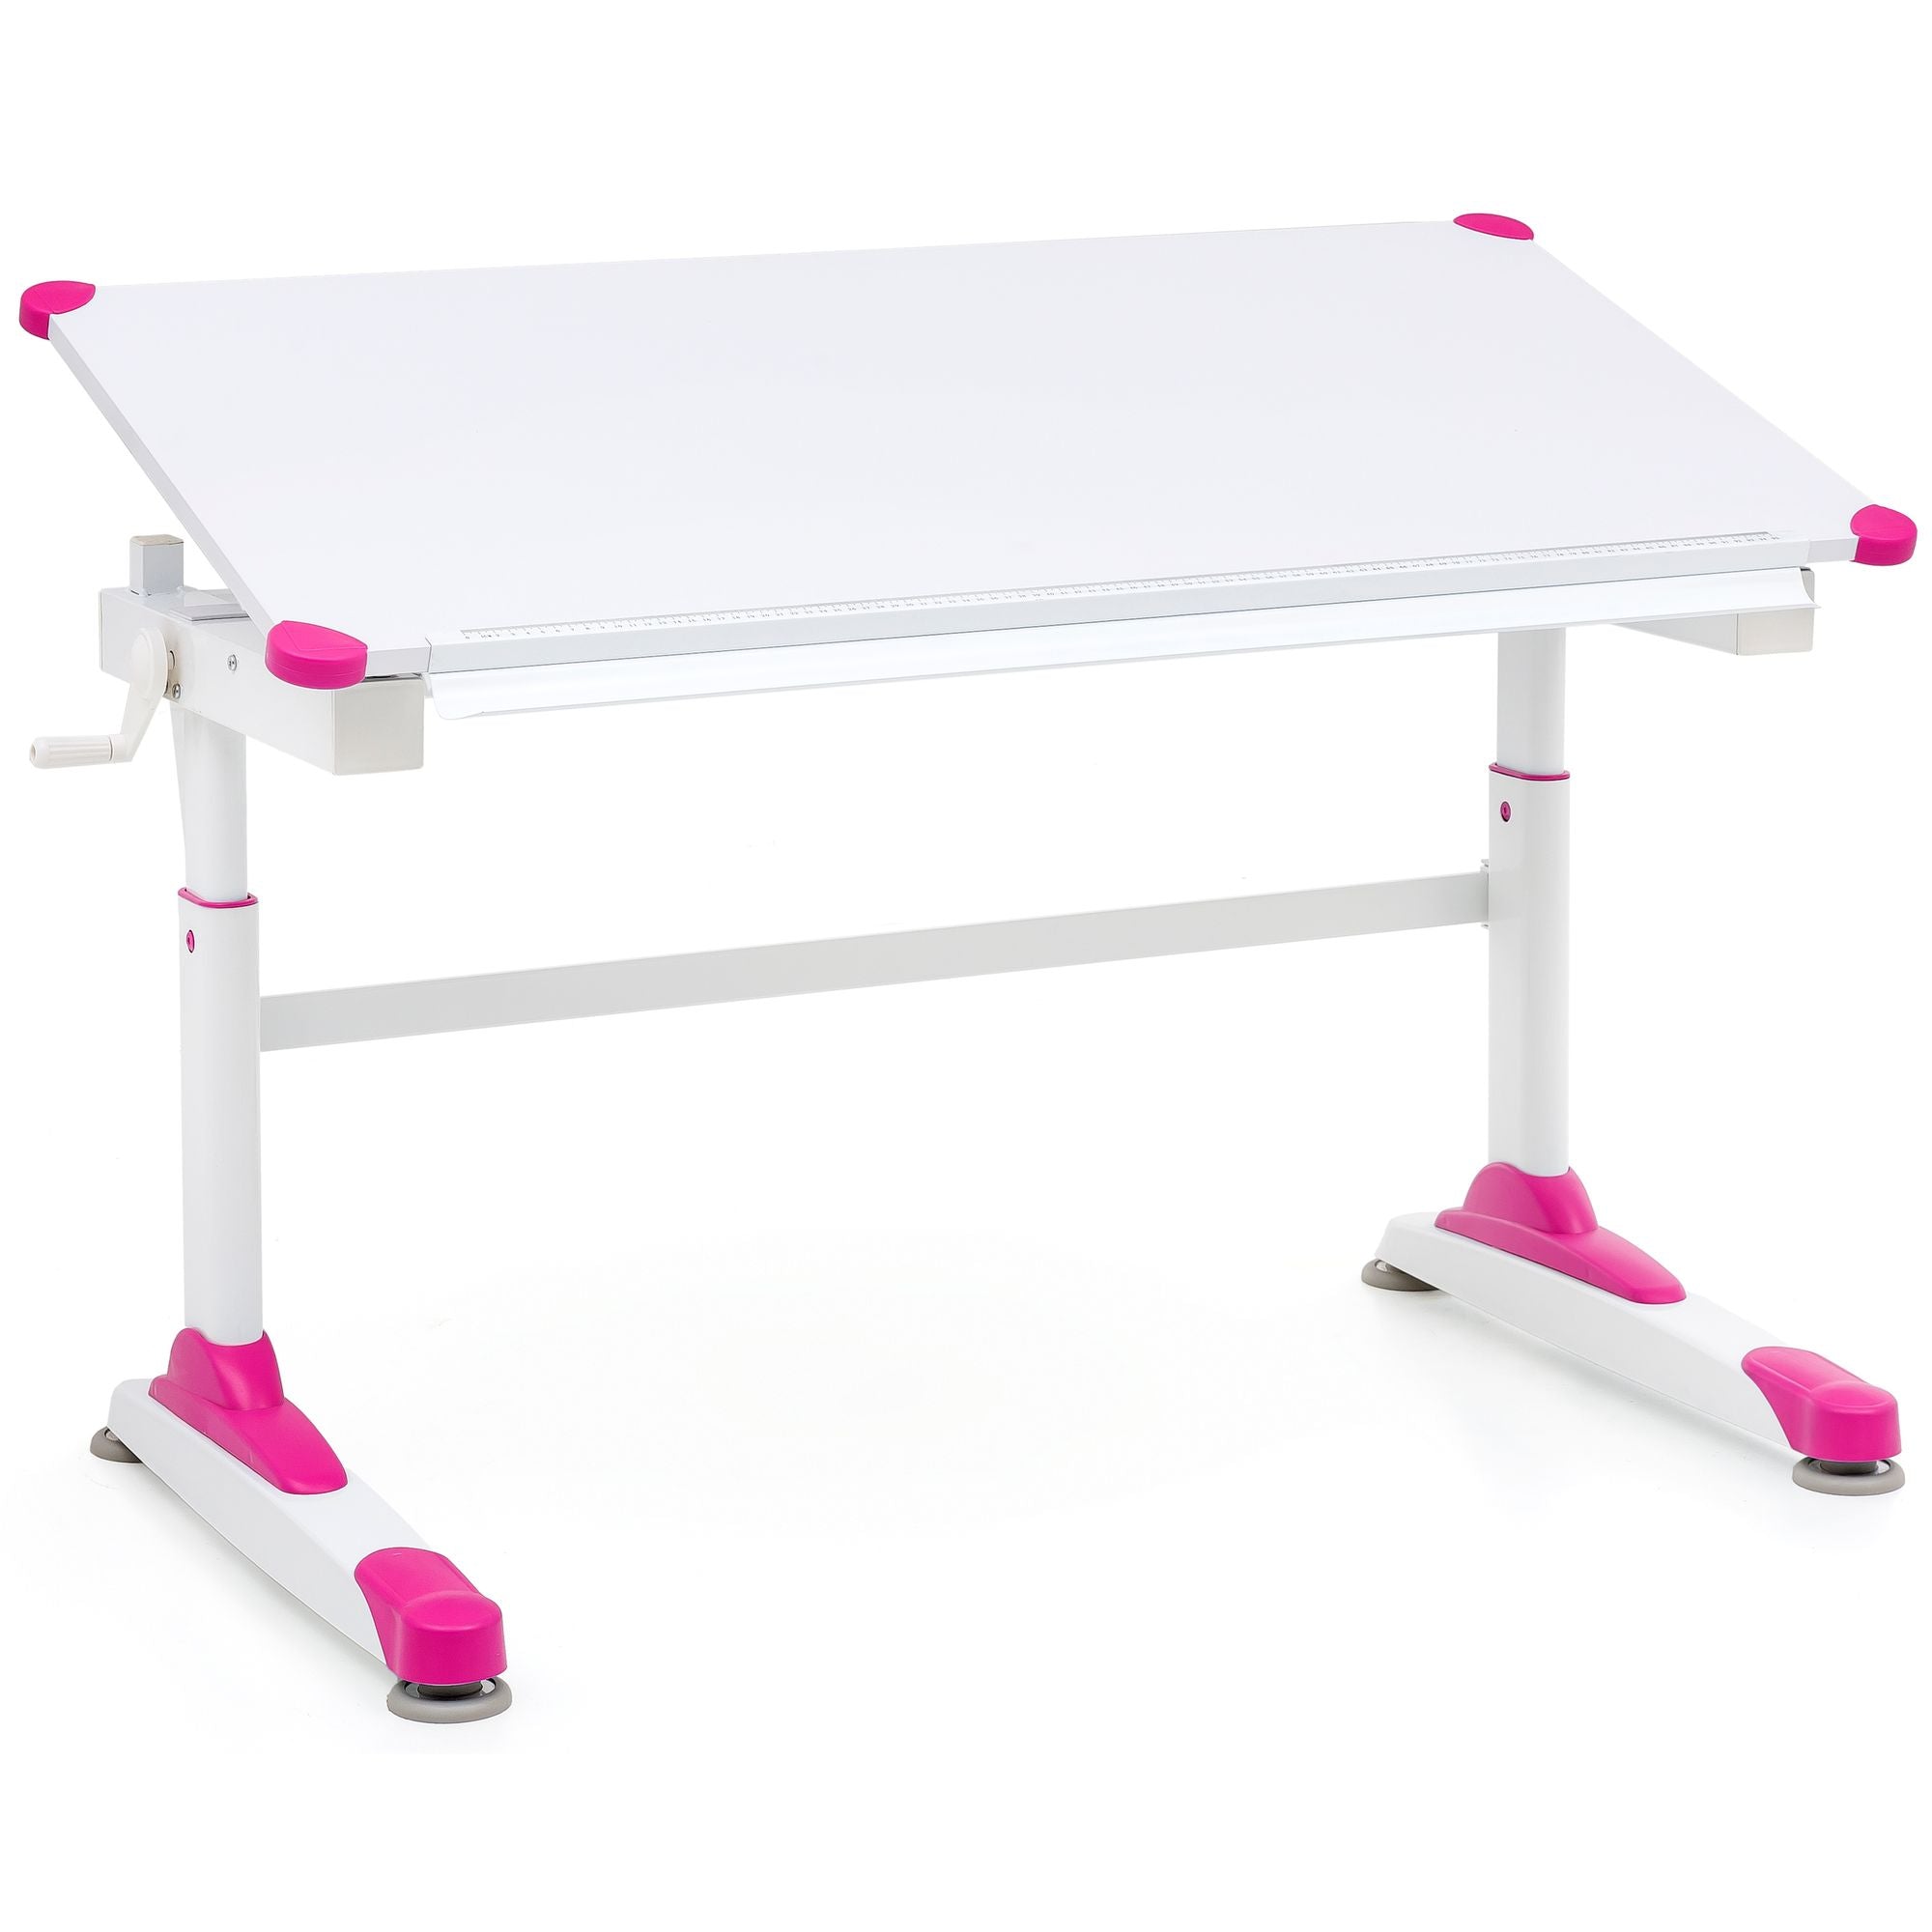 Børneskrivebord med justerbar højde, 119 x 67 cm, lyserød og hvid